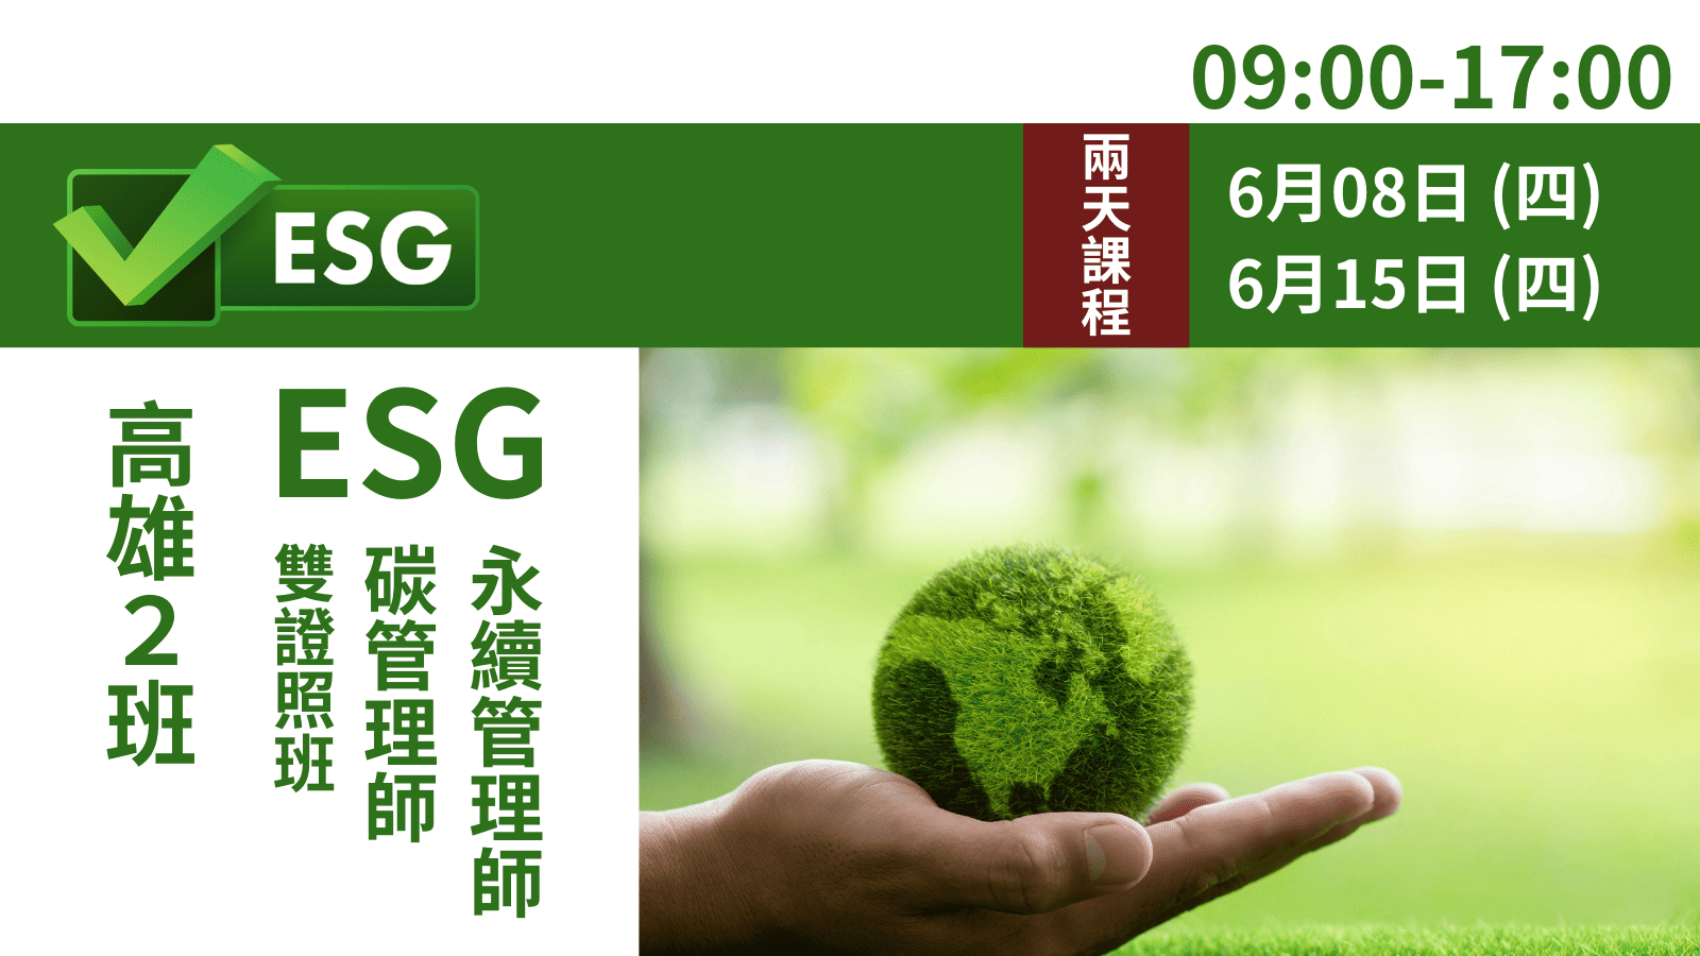 ESG商品圖 (1600 × 900 像素)